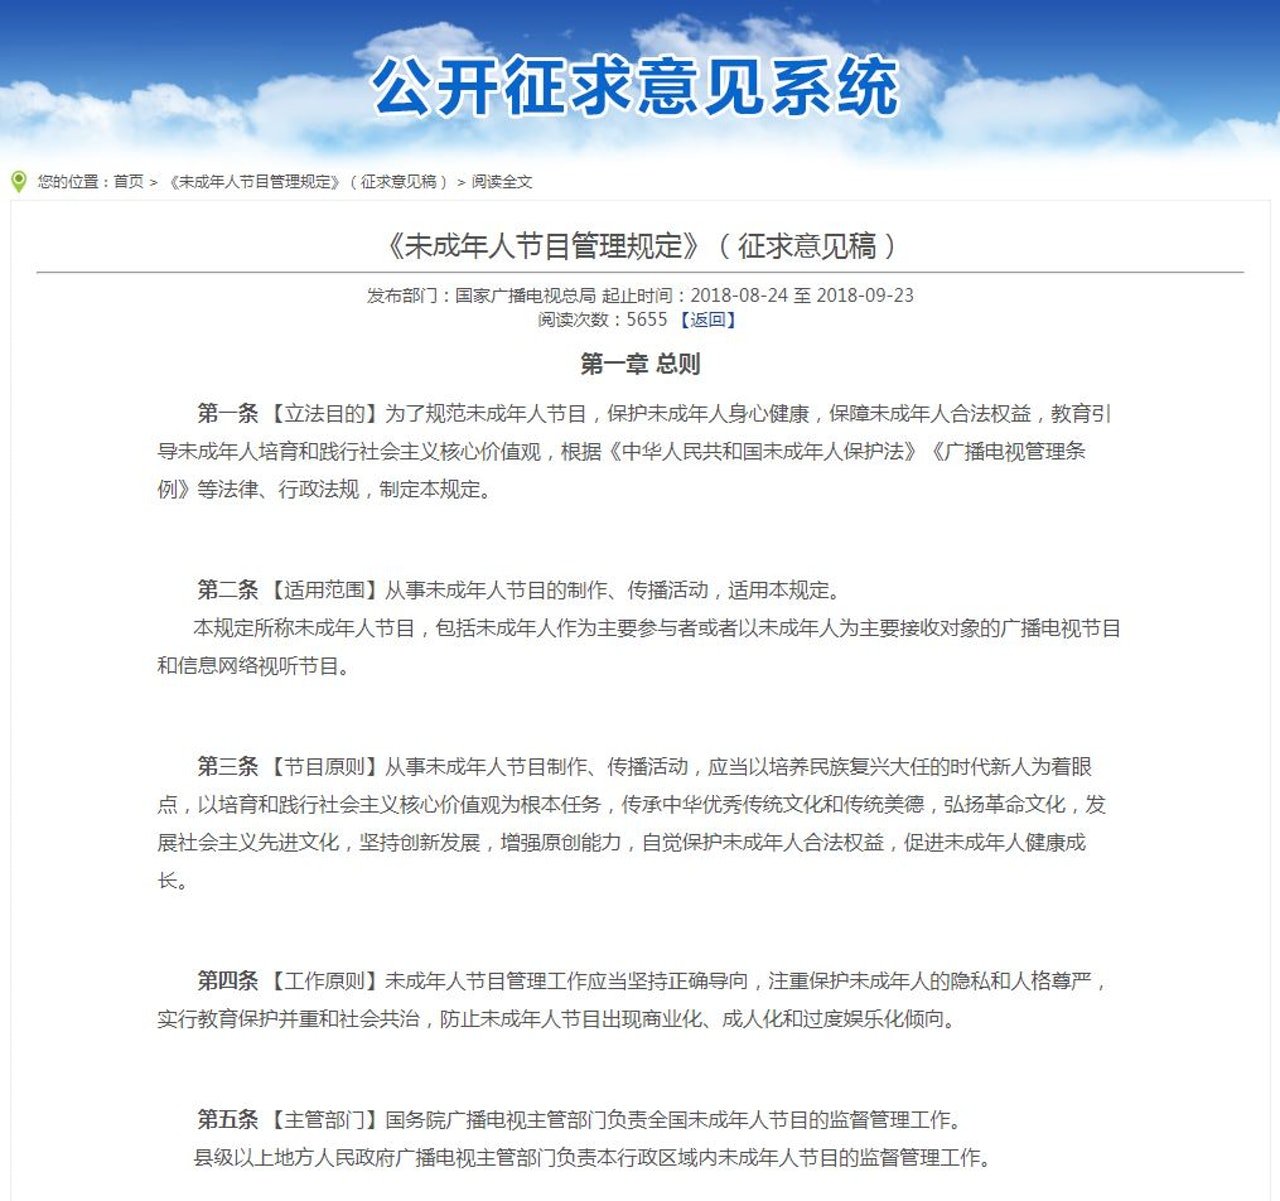 中国广电总局发布“未成年人节目管理规定”。